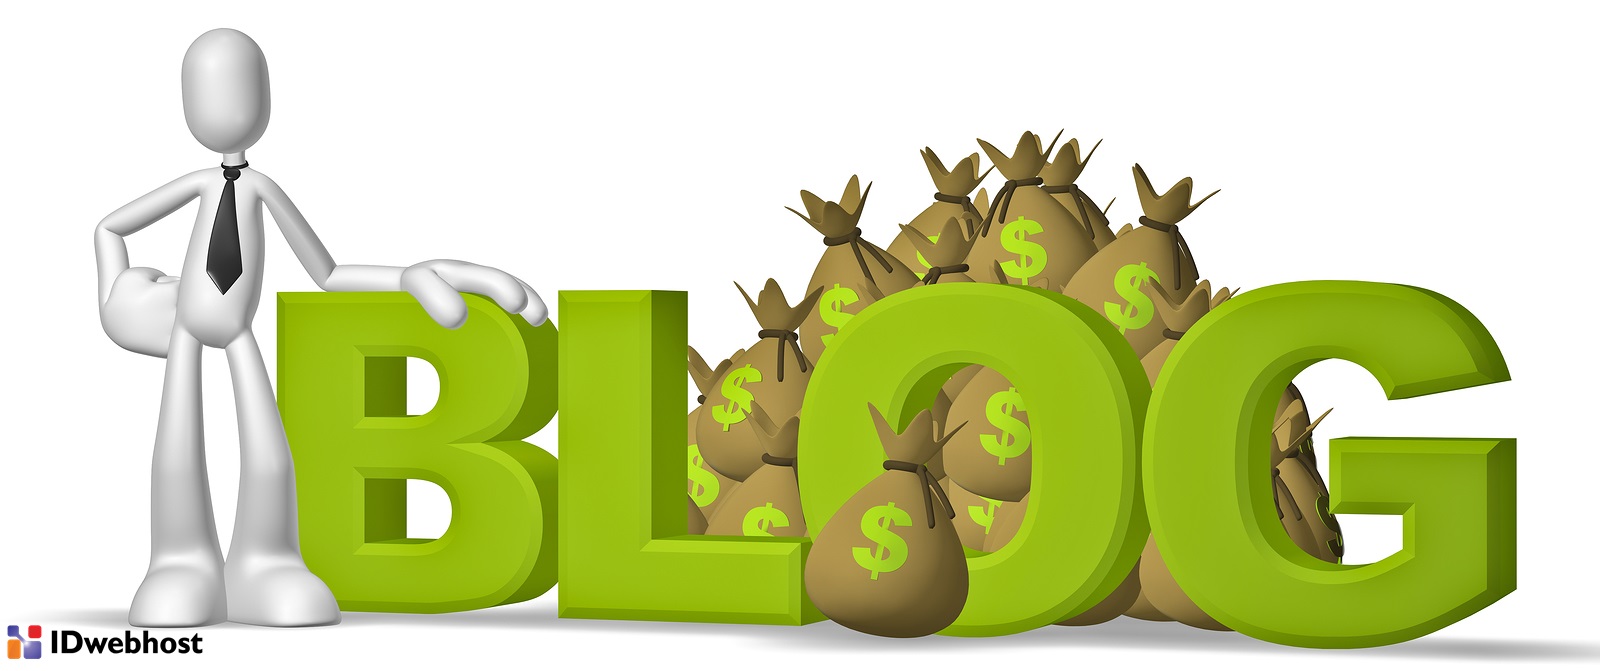 Cara Menghasilkan Uang dari Blog atau Website - BLOG IDwebhost